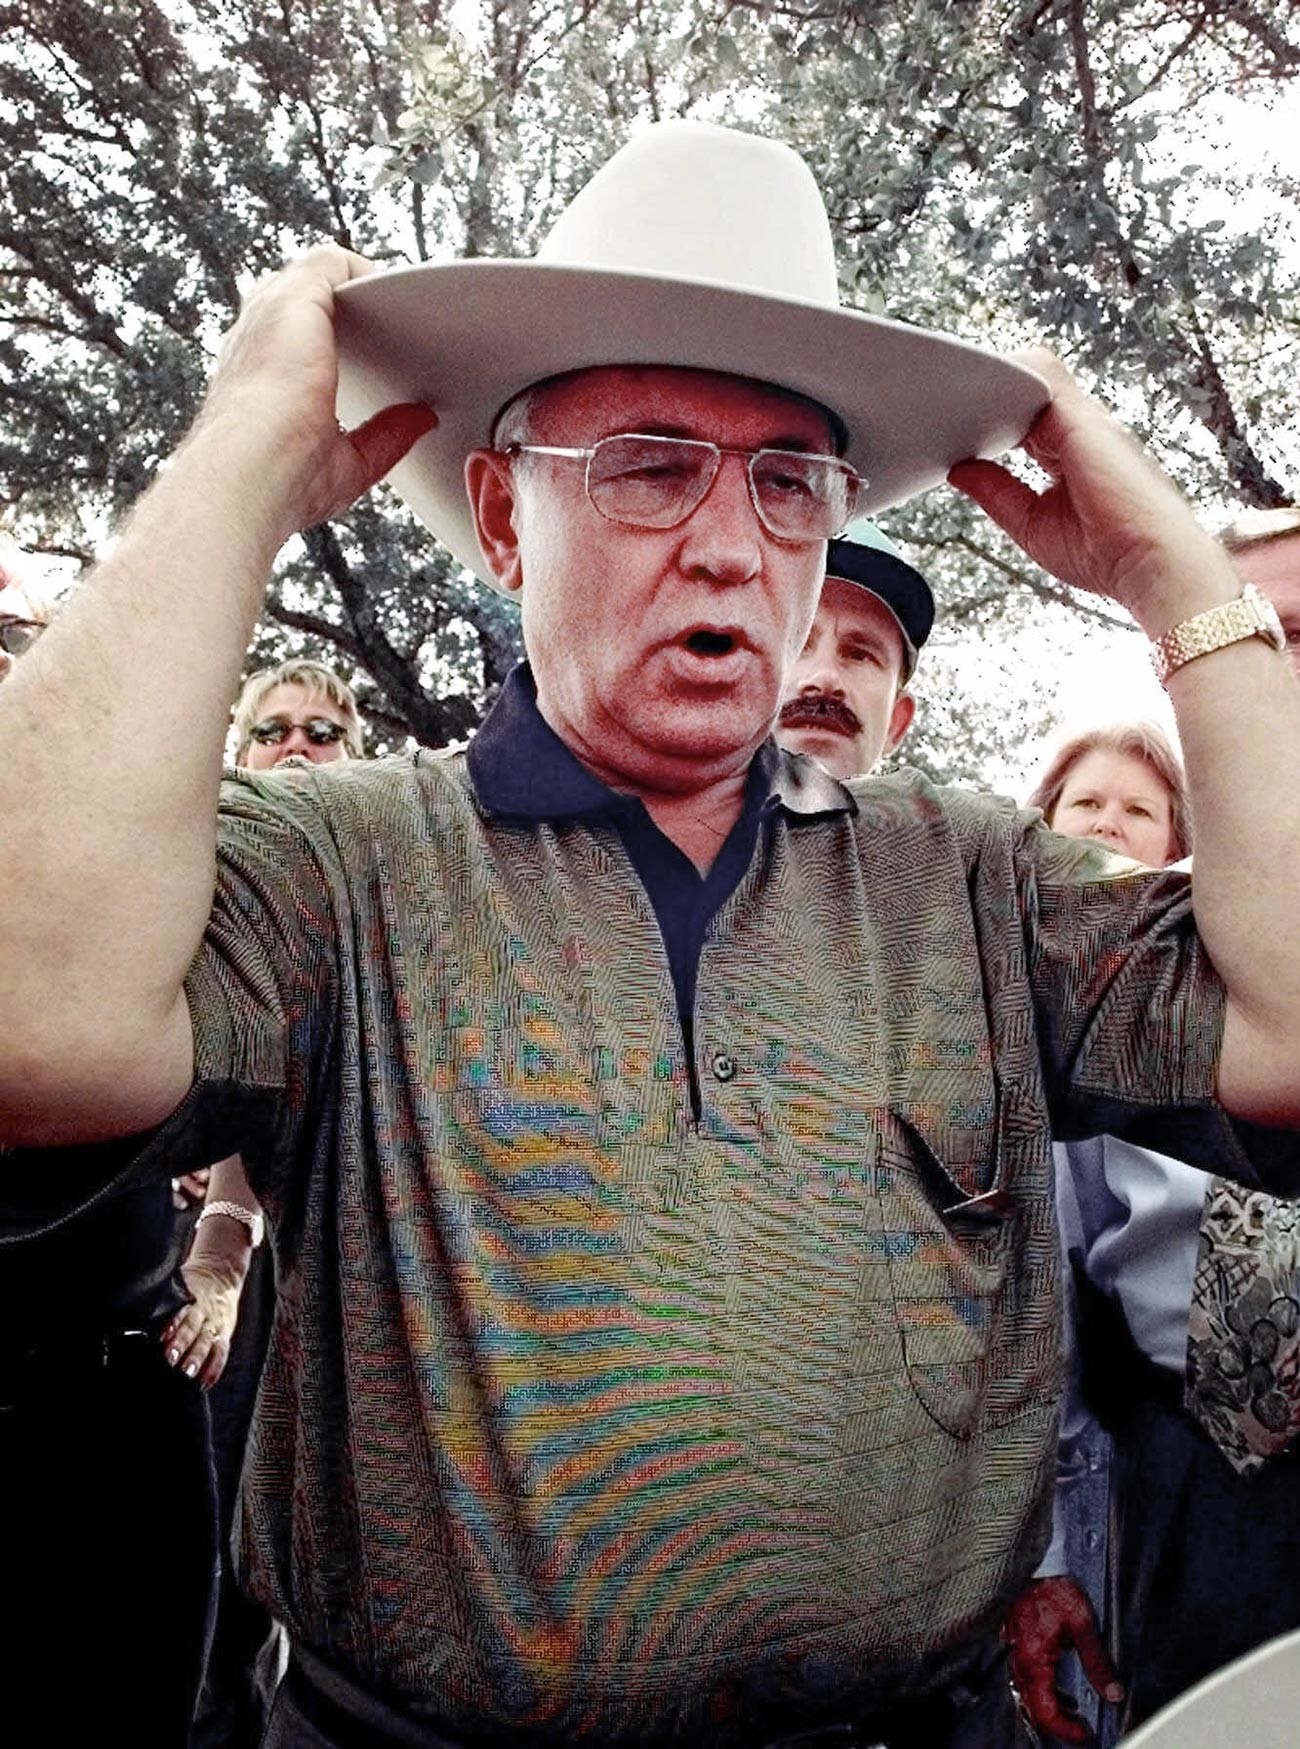 Бившият съветски президент Михаил Горбачов си слага каубойска шапка наобратно на панаир по време на посещение в Далас, Тексас, 13 октомври 1998 г., Горбачов идва в Далас, за да изнесе лекция в Южния методистки университет и по този повод му е подарена шапка.